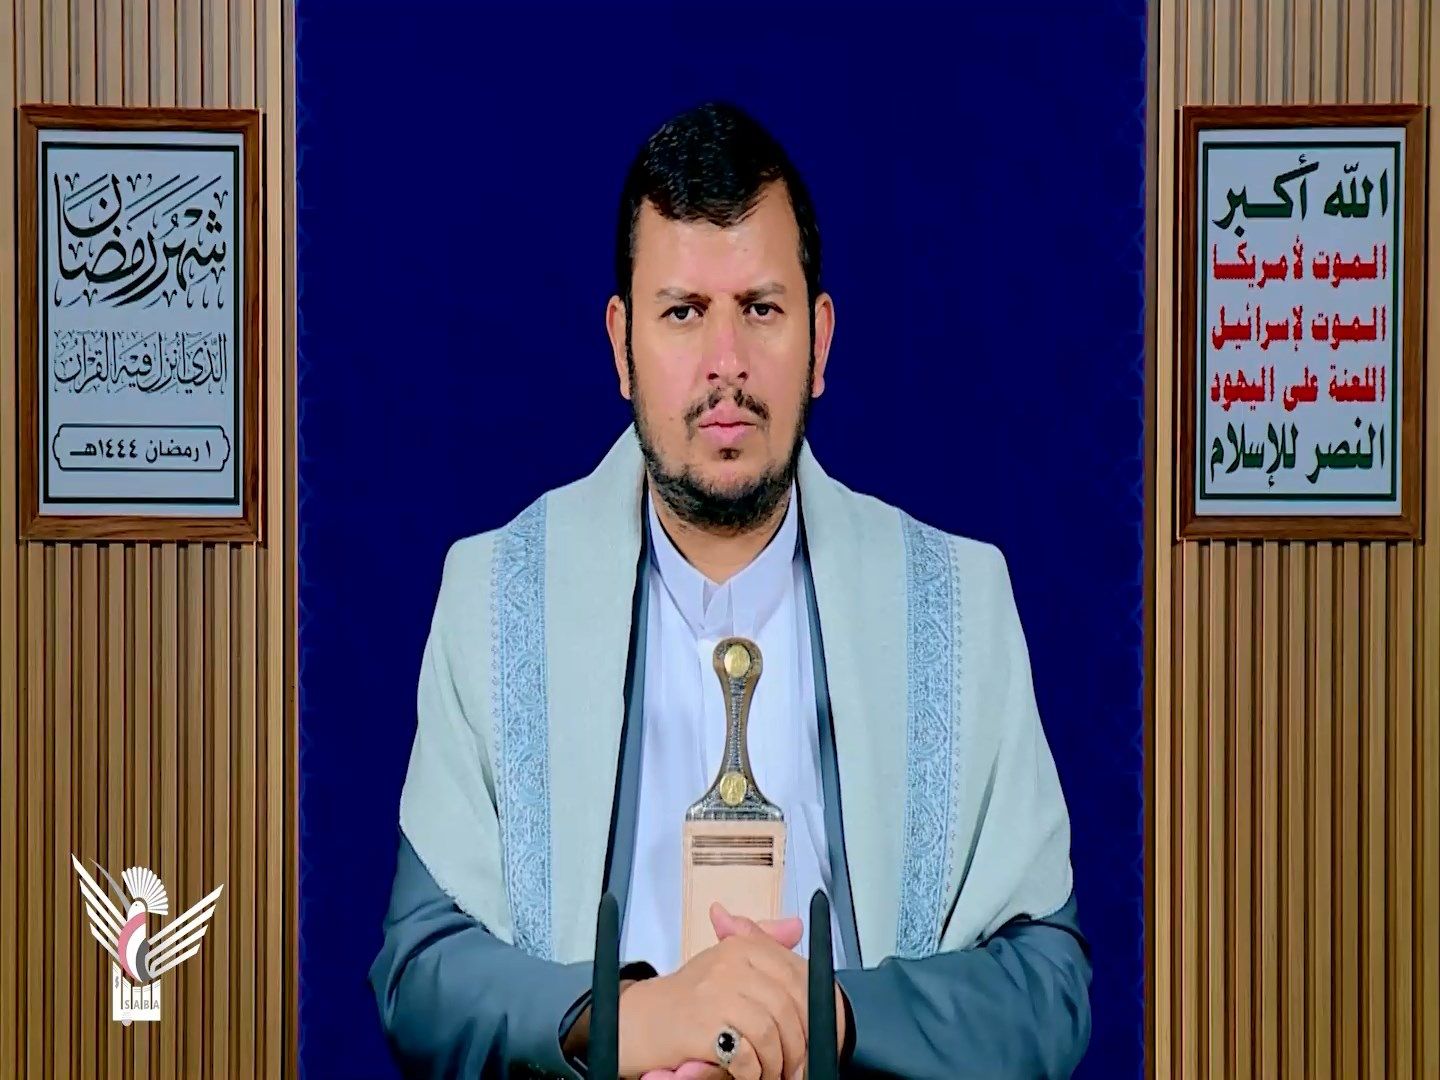 المحاضرة الرمضانية الأولى لقائد الثورة السيد عبدالملك بدرالدين الحوثي